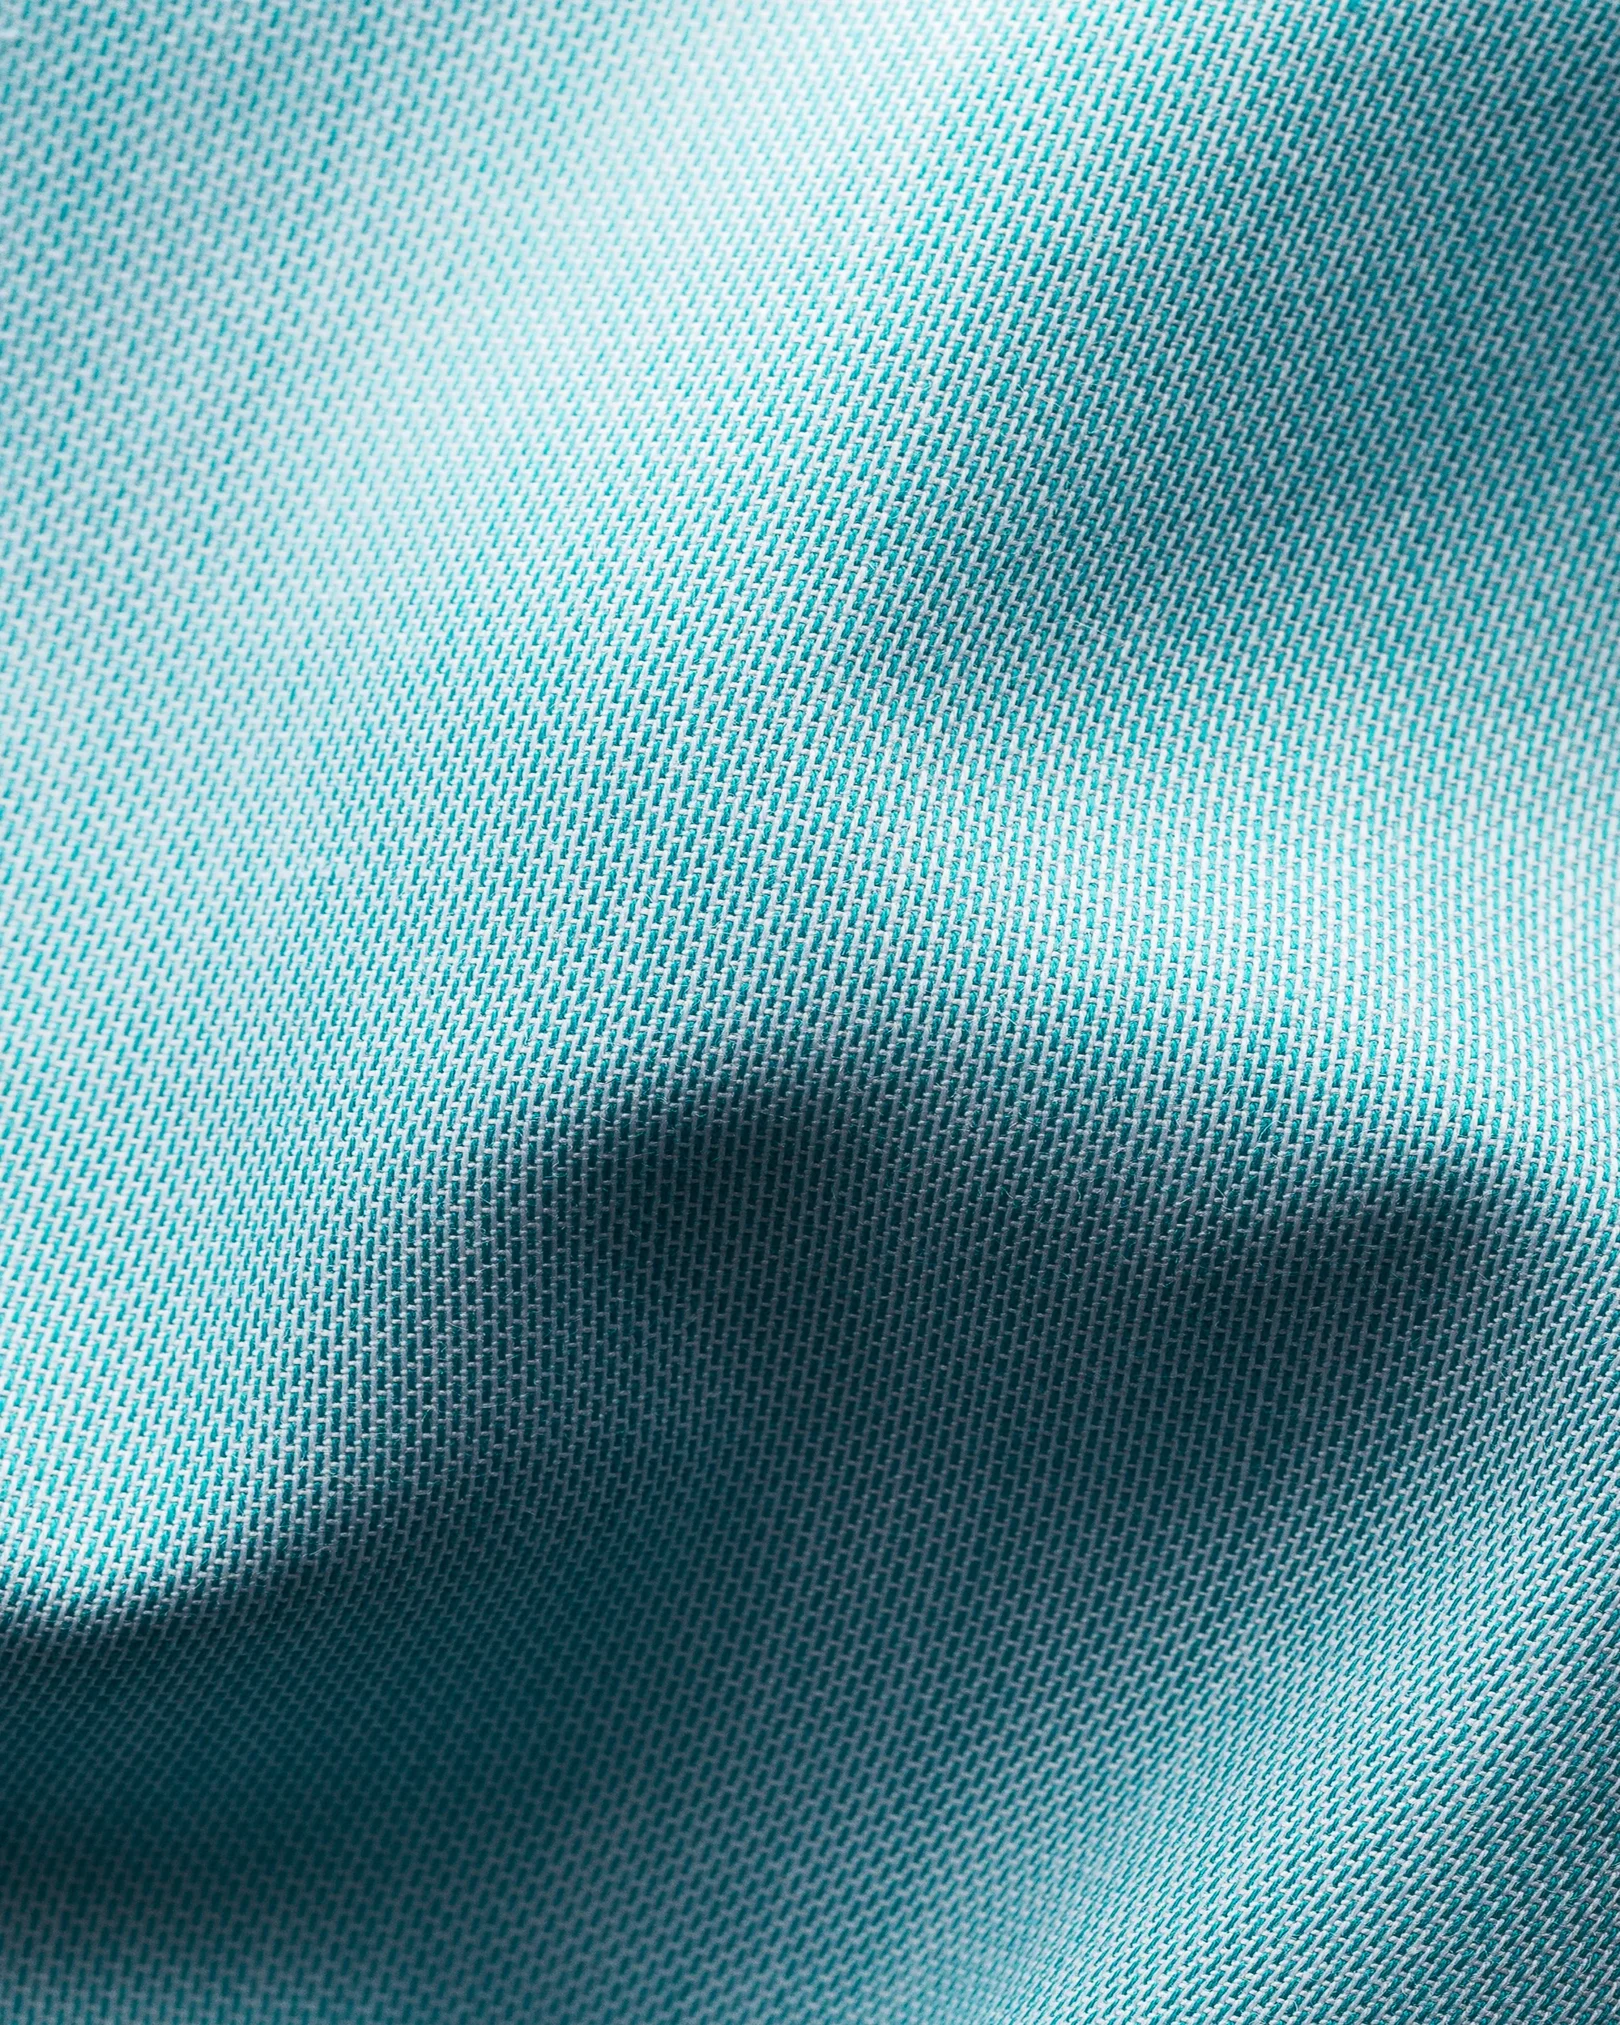 Eton - turquoise twill shirt navy piping